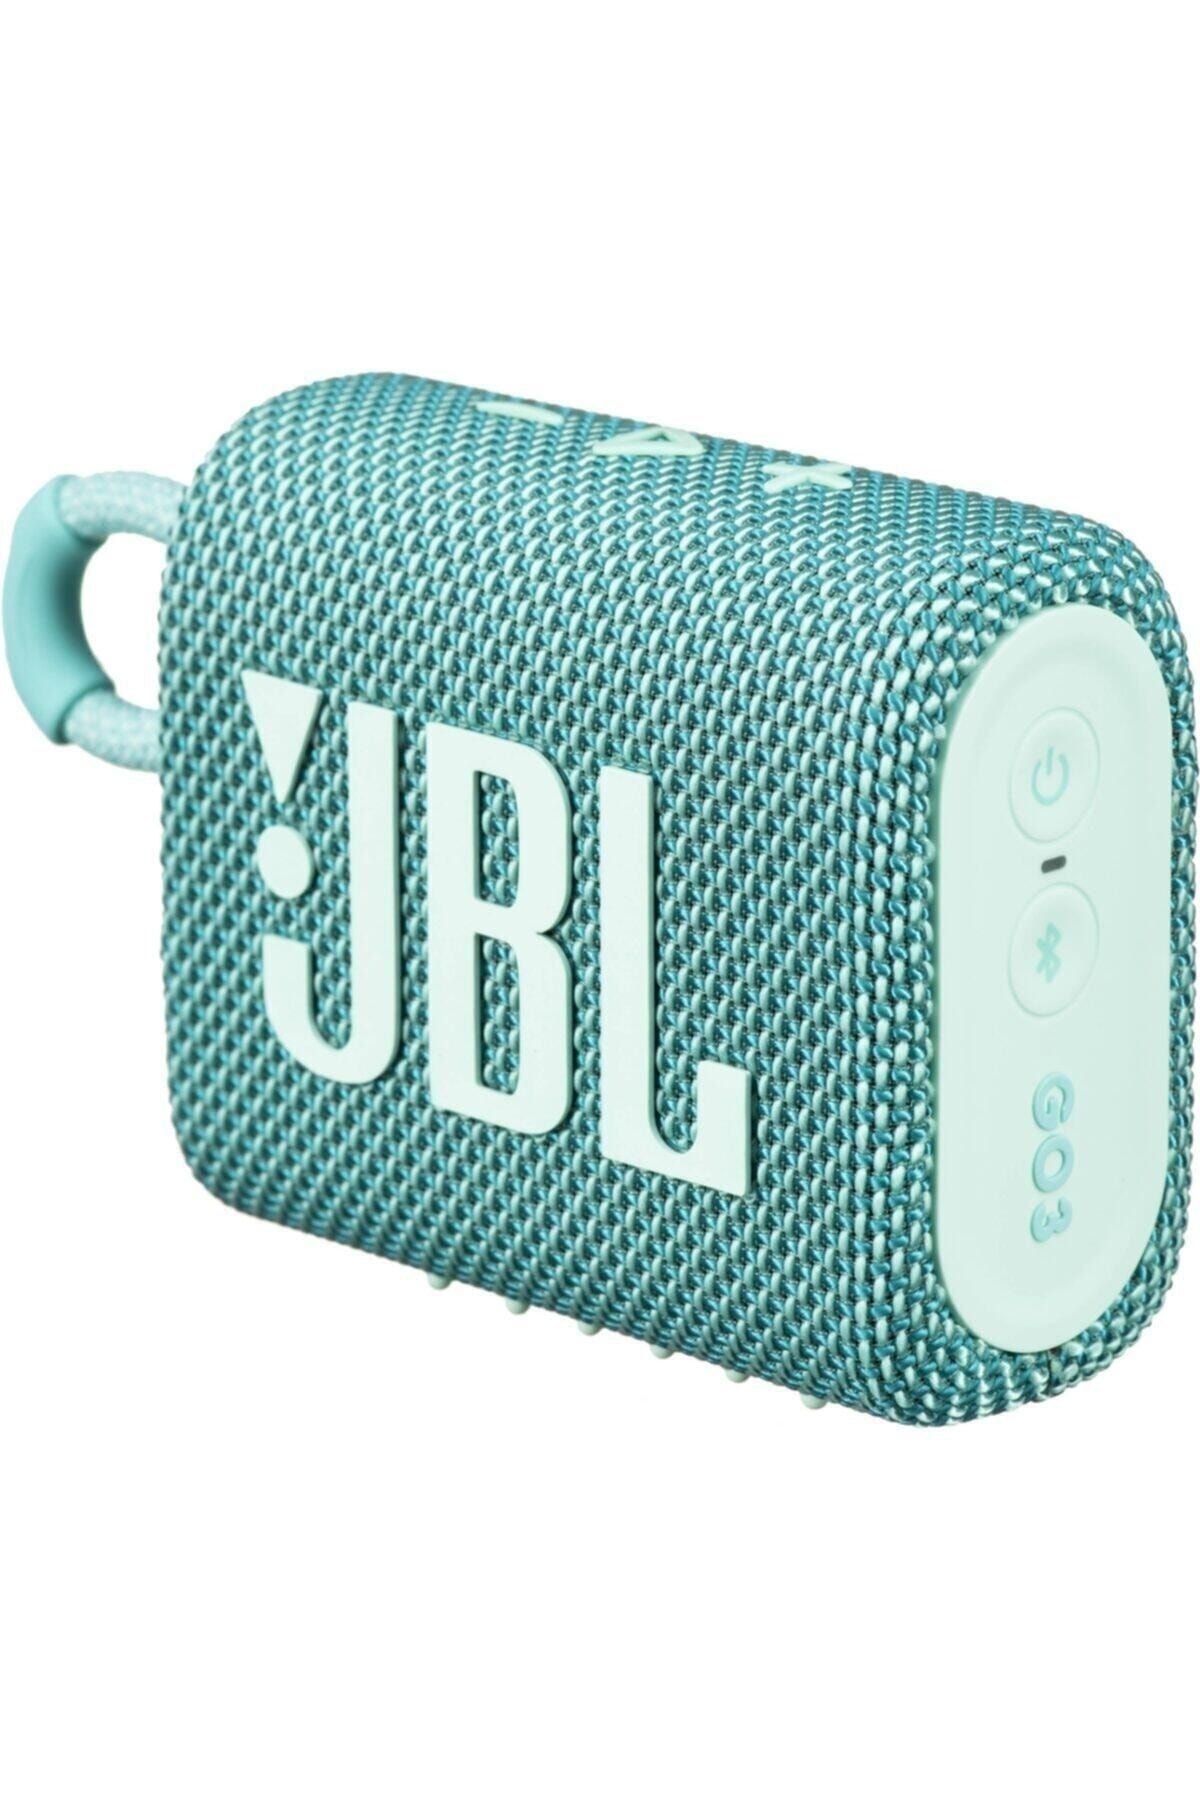 JBL Go 3 Taşınabilir Su Geçirmez Bluetooth Hoparlör